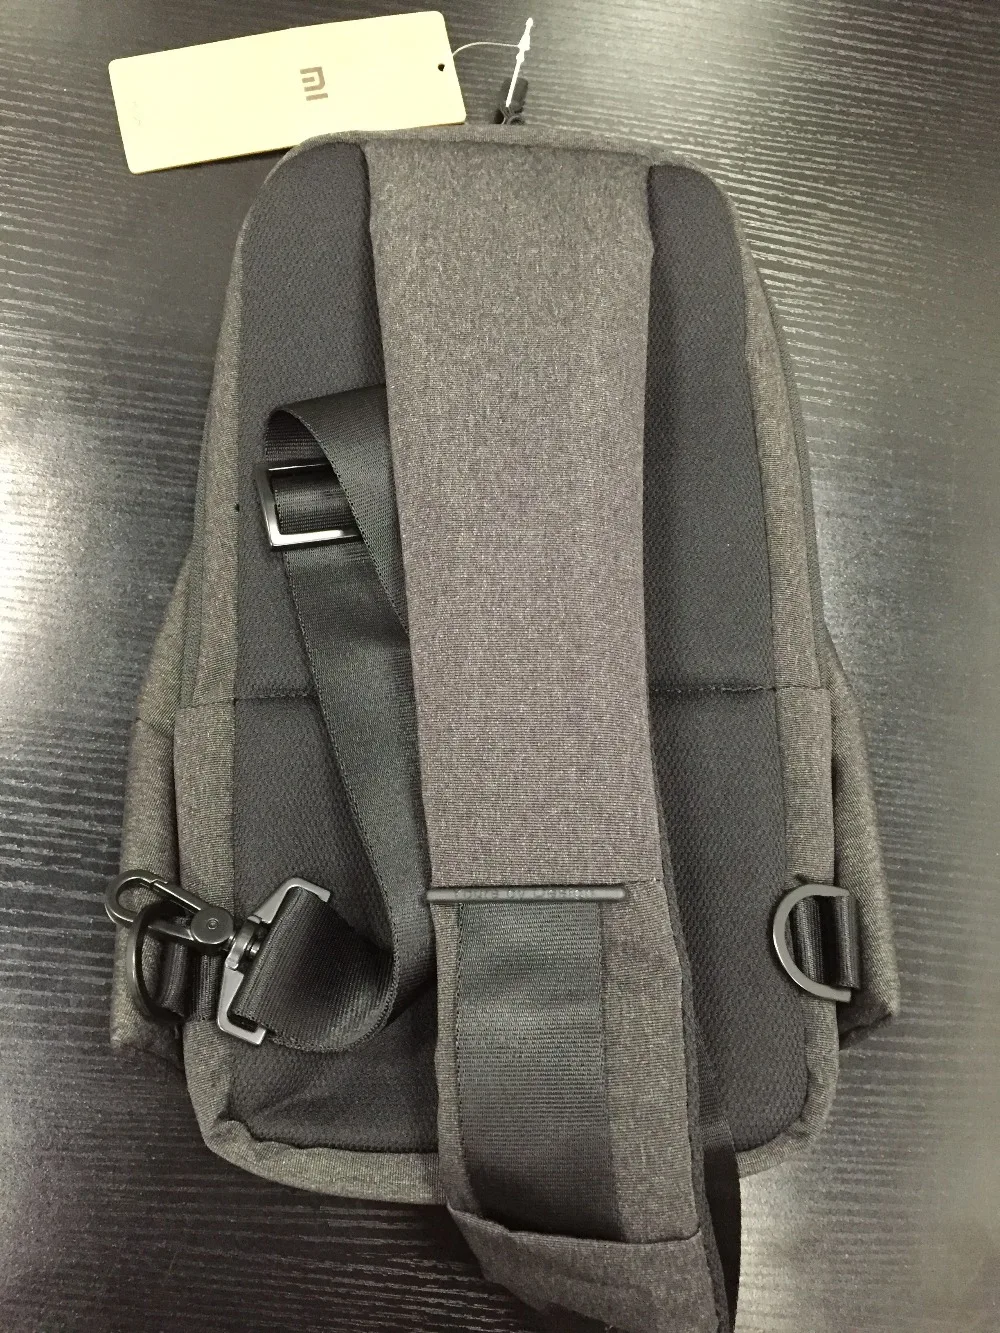 Оригинальный Xiaomi mi сумка на плечо простая нагрудная сумка мужская сумка женская повседневная mi ni сумка модный тип рюкзак для камеры